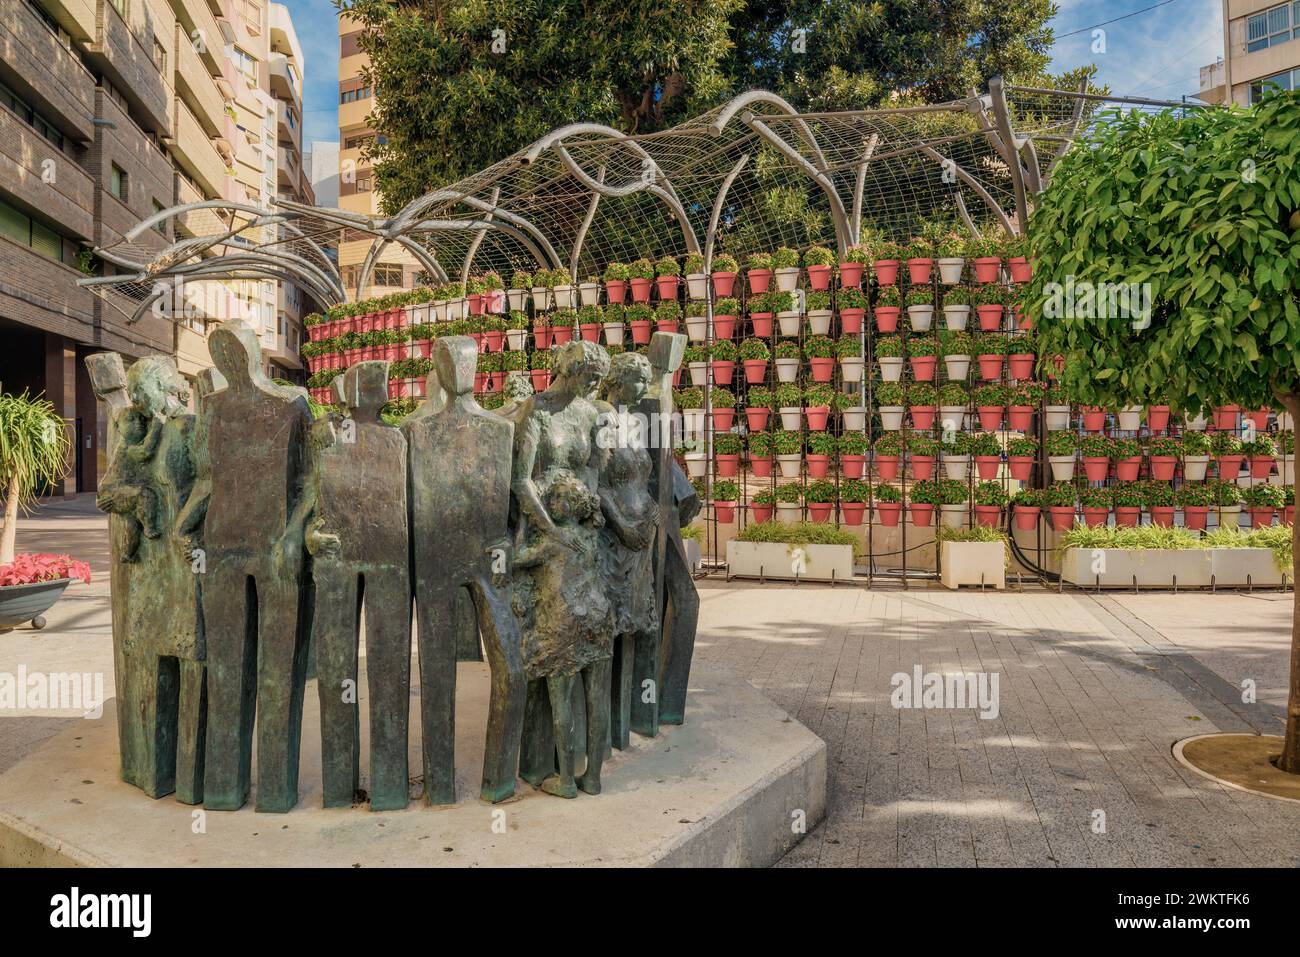 Denkmal für Menschenrechte, Bronzeskulpturgruppe von Mariano González Beltrán, auf der Plaza de Santo Domingo, Stadt Murcia, Spanien, Europa. Stockfoto